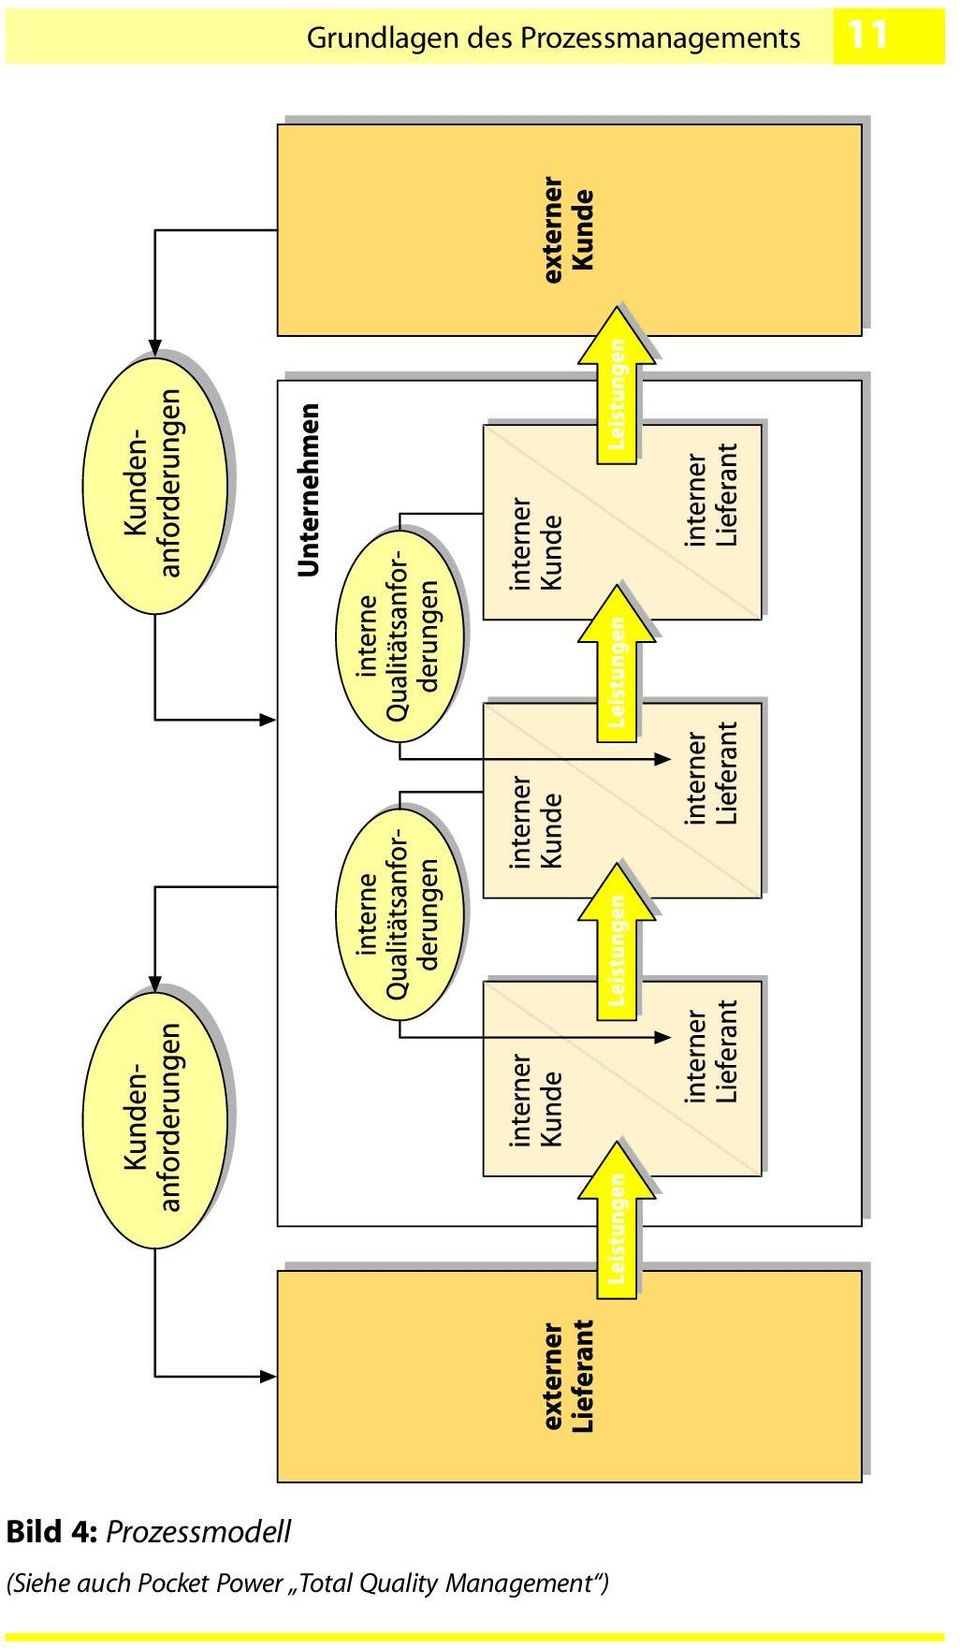 4: Prozessmodell (Siehe